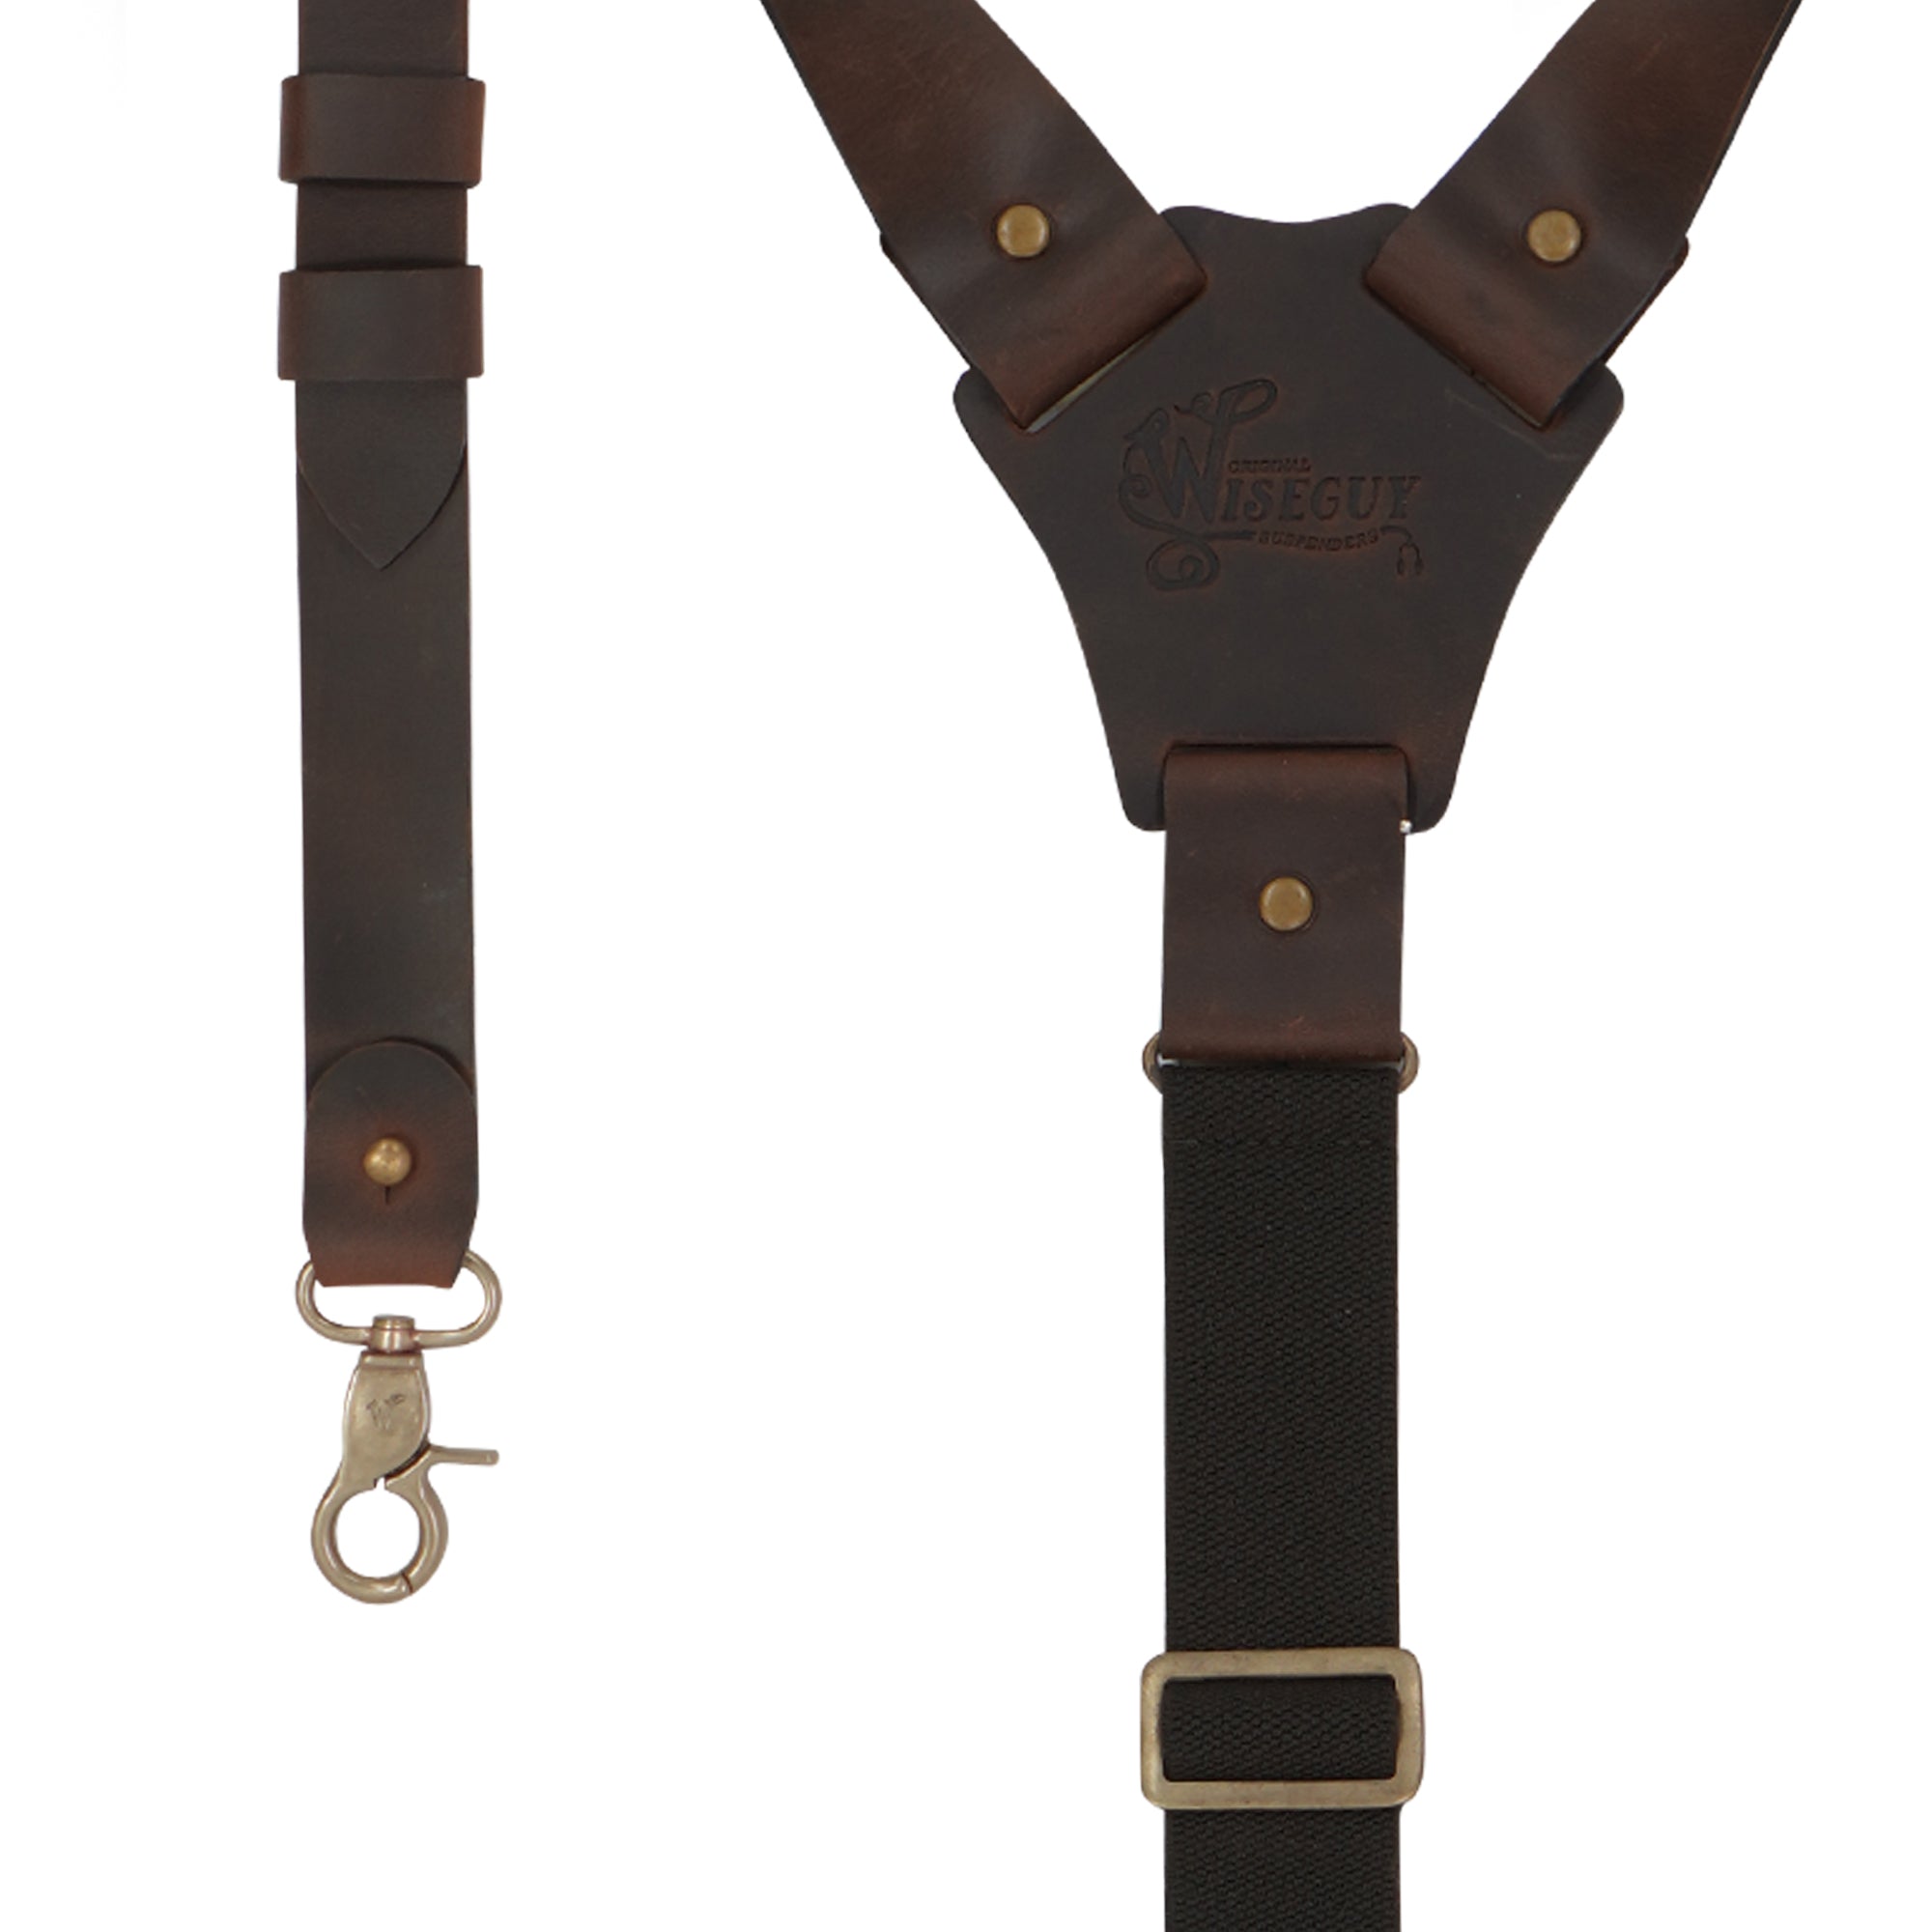 The Hershel Flex Brown Wide Suspenders No. L7013